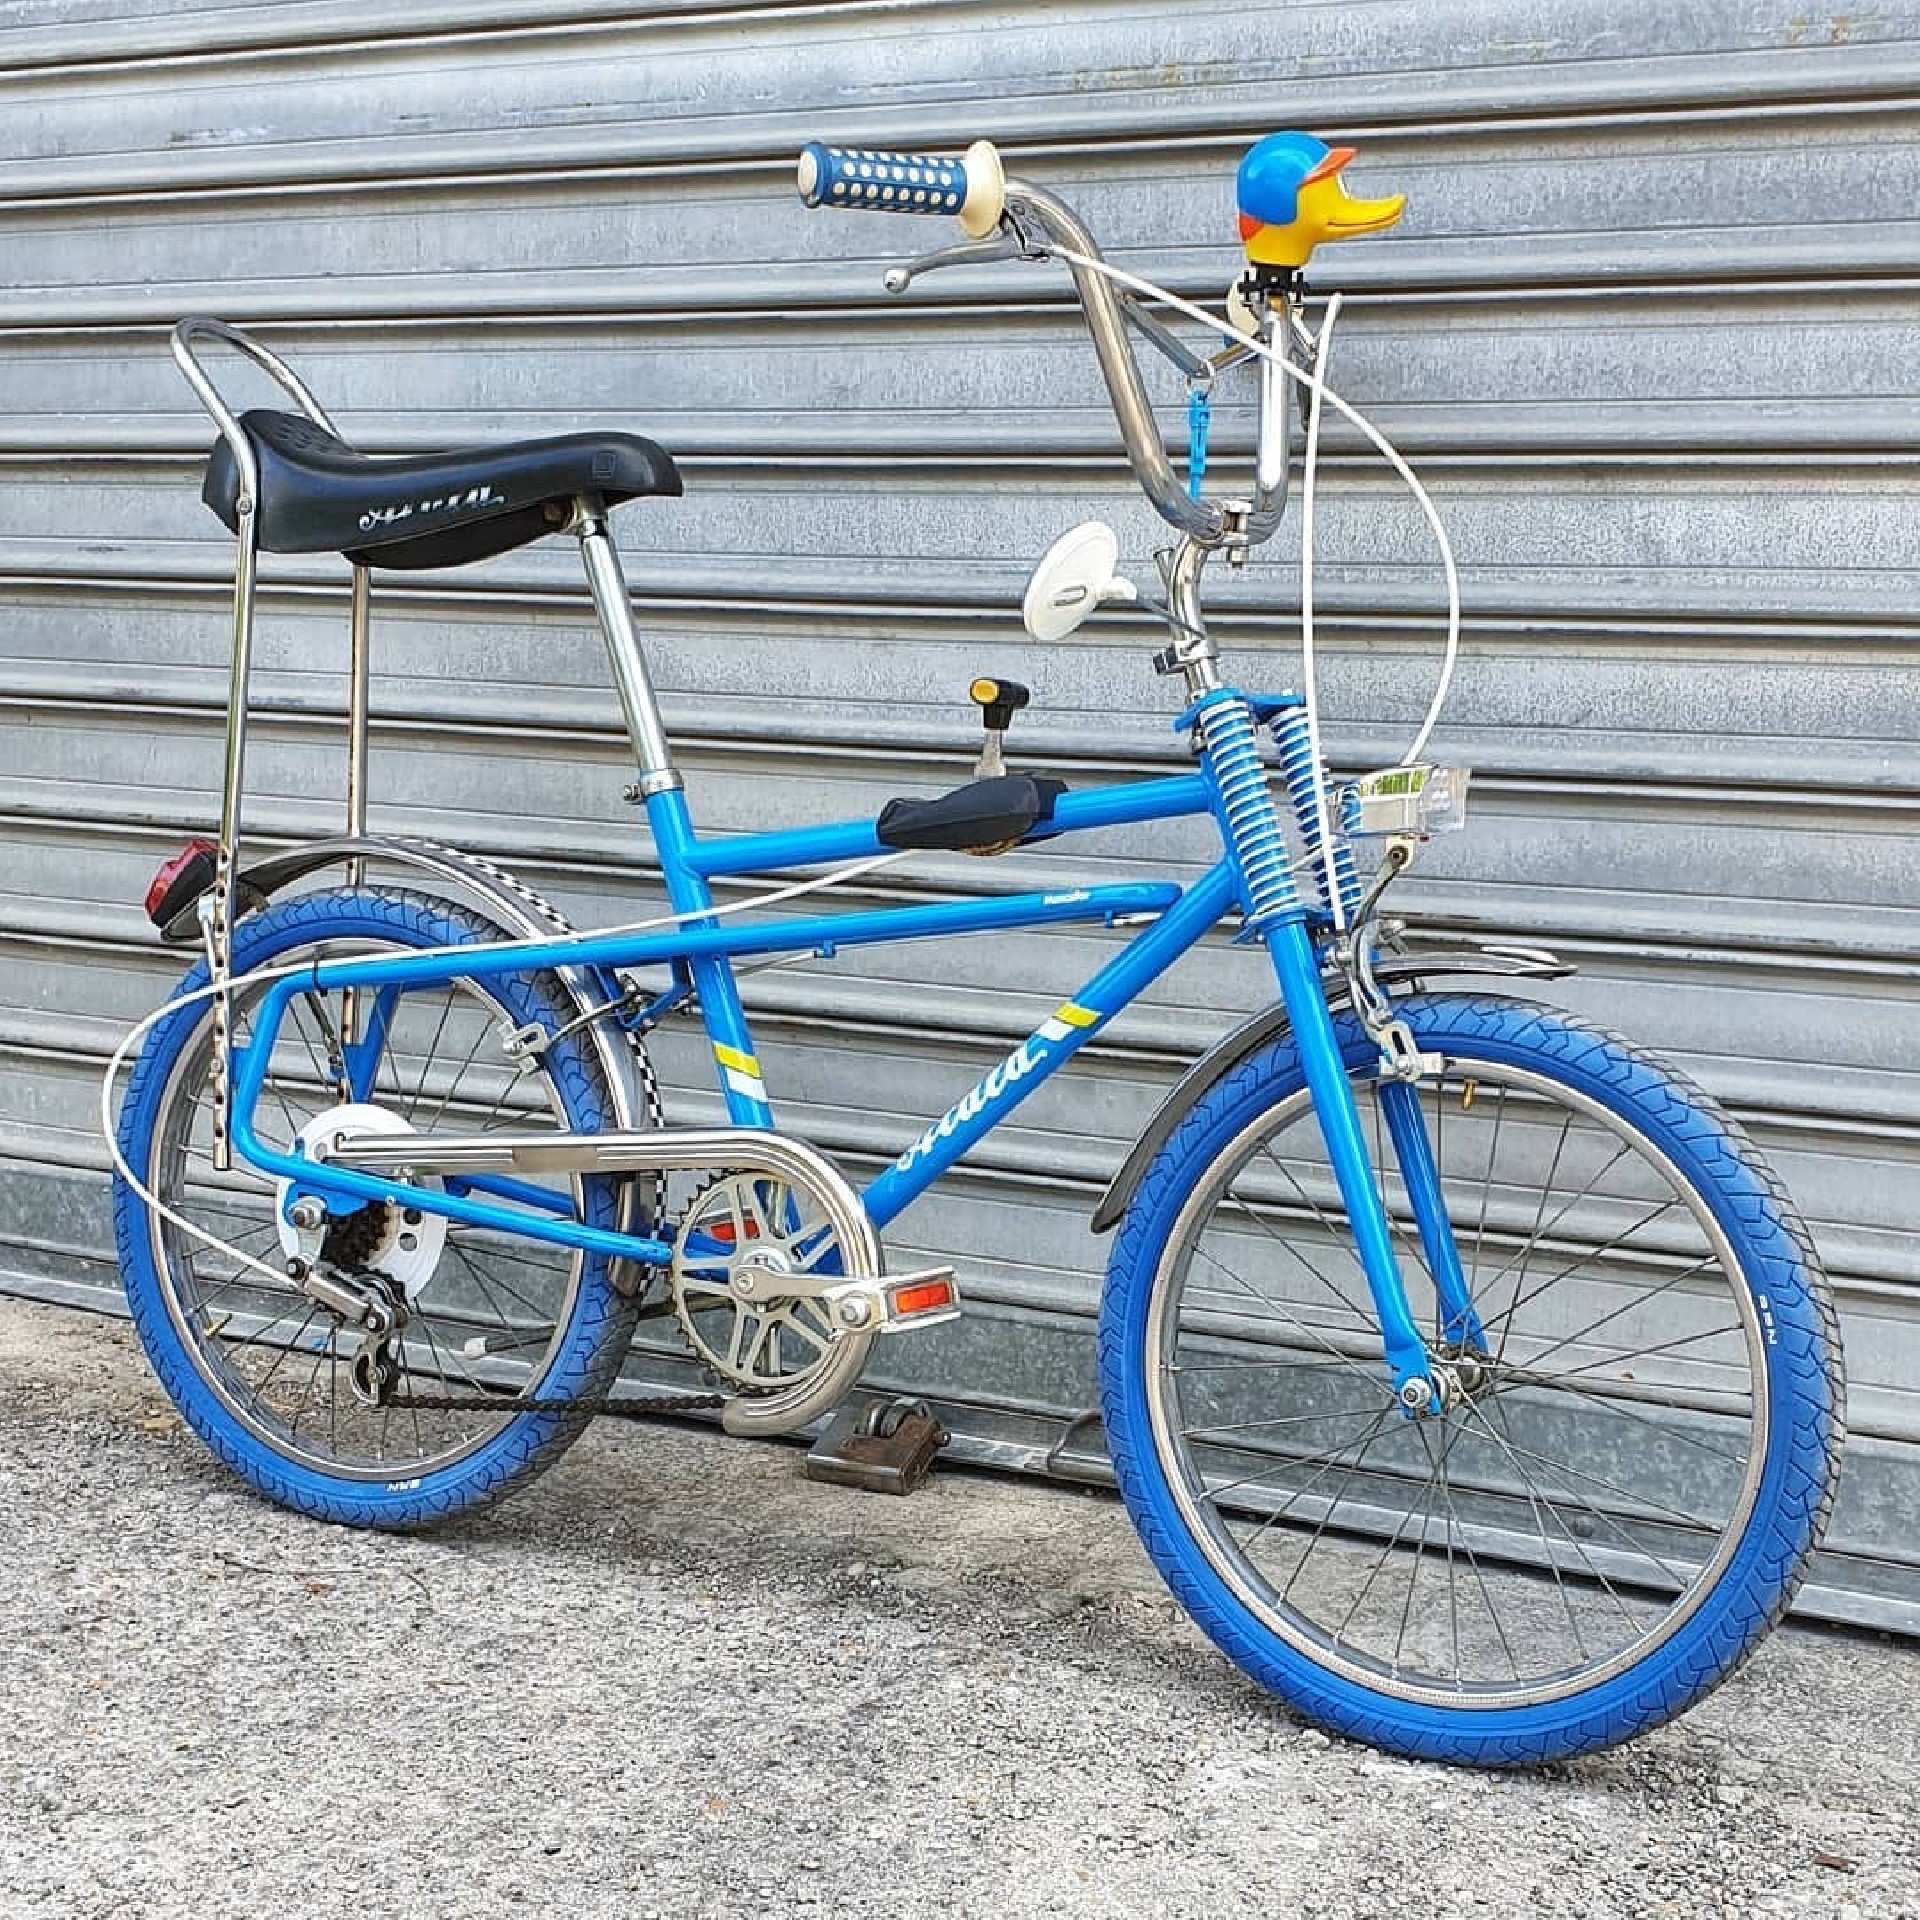 Vintage Original & Restored Bikes